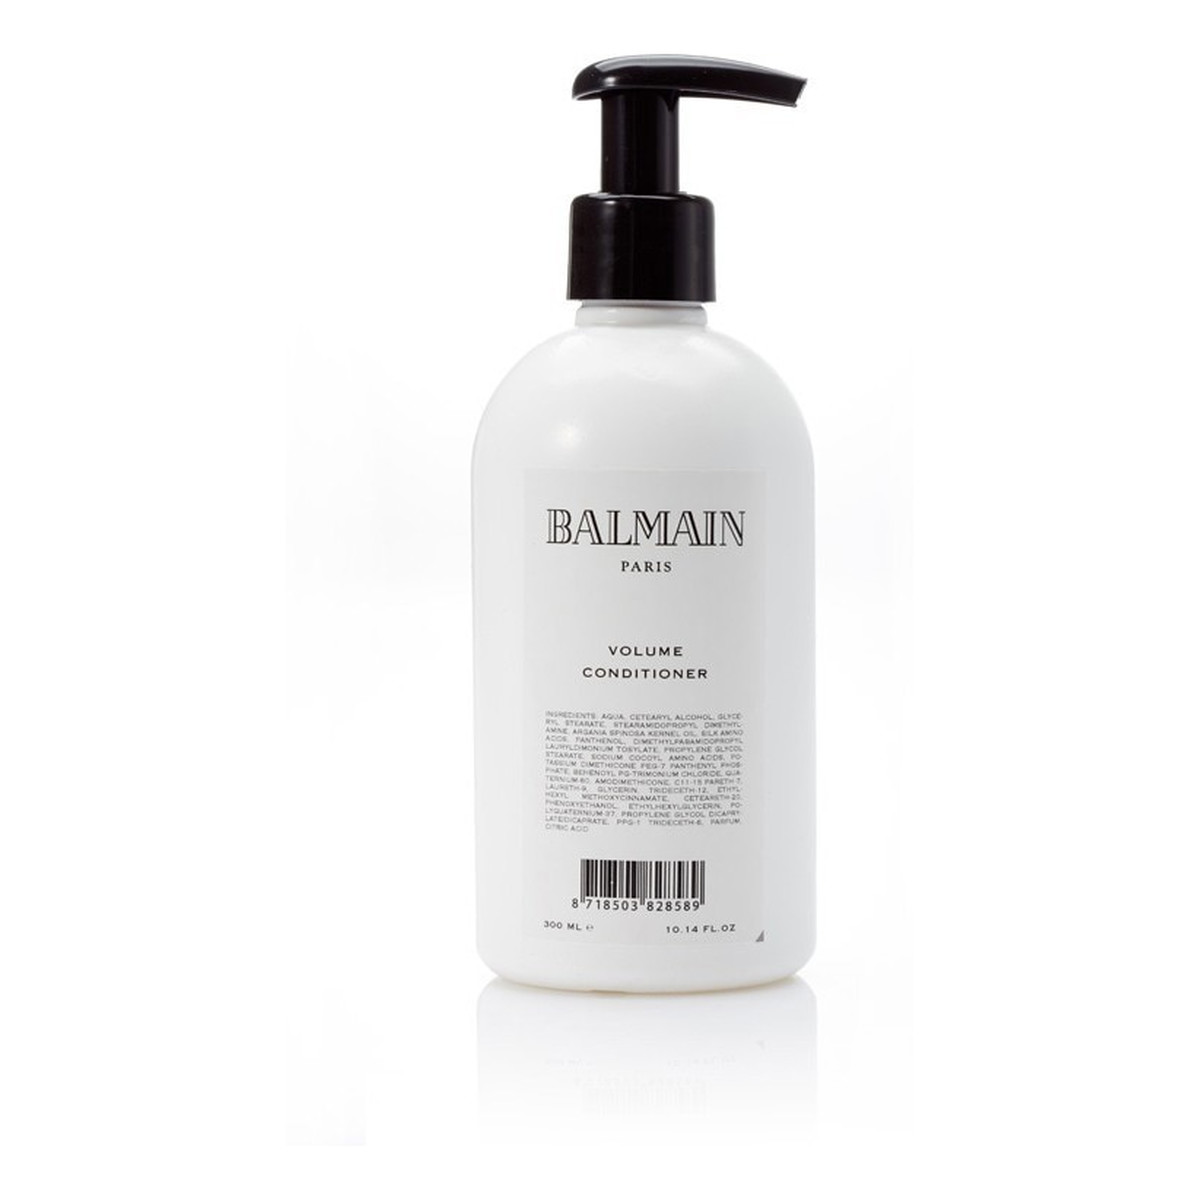 Balmain Volume Conditioner odżywczy balsam do włosów nadający objętość 300ml